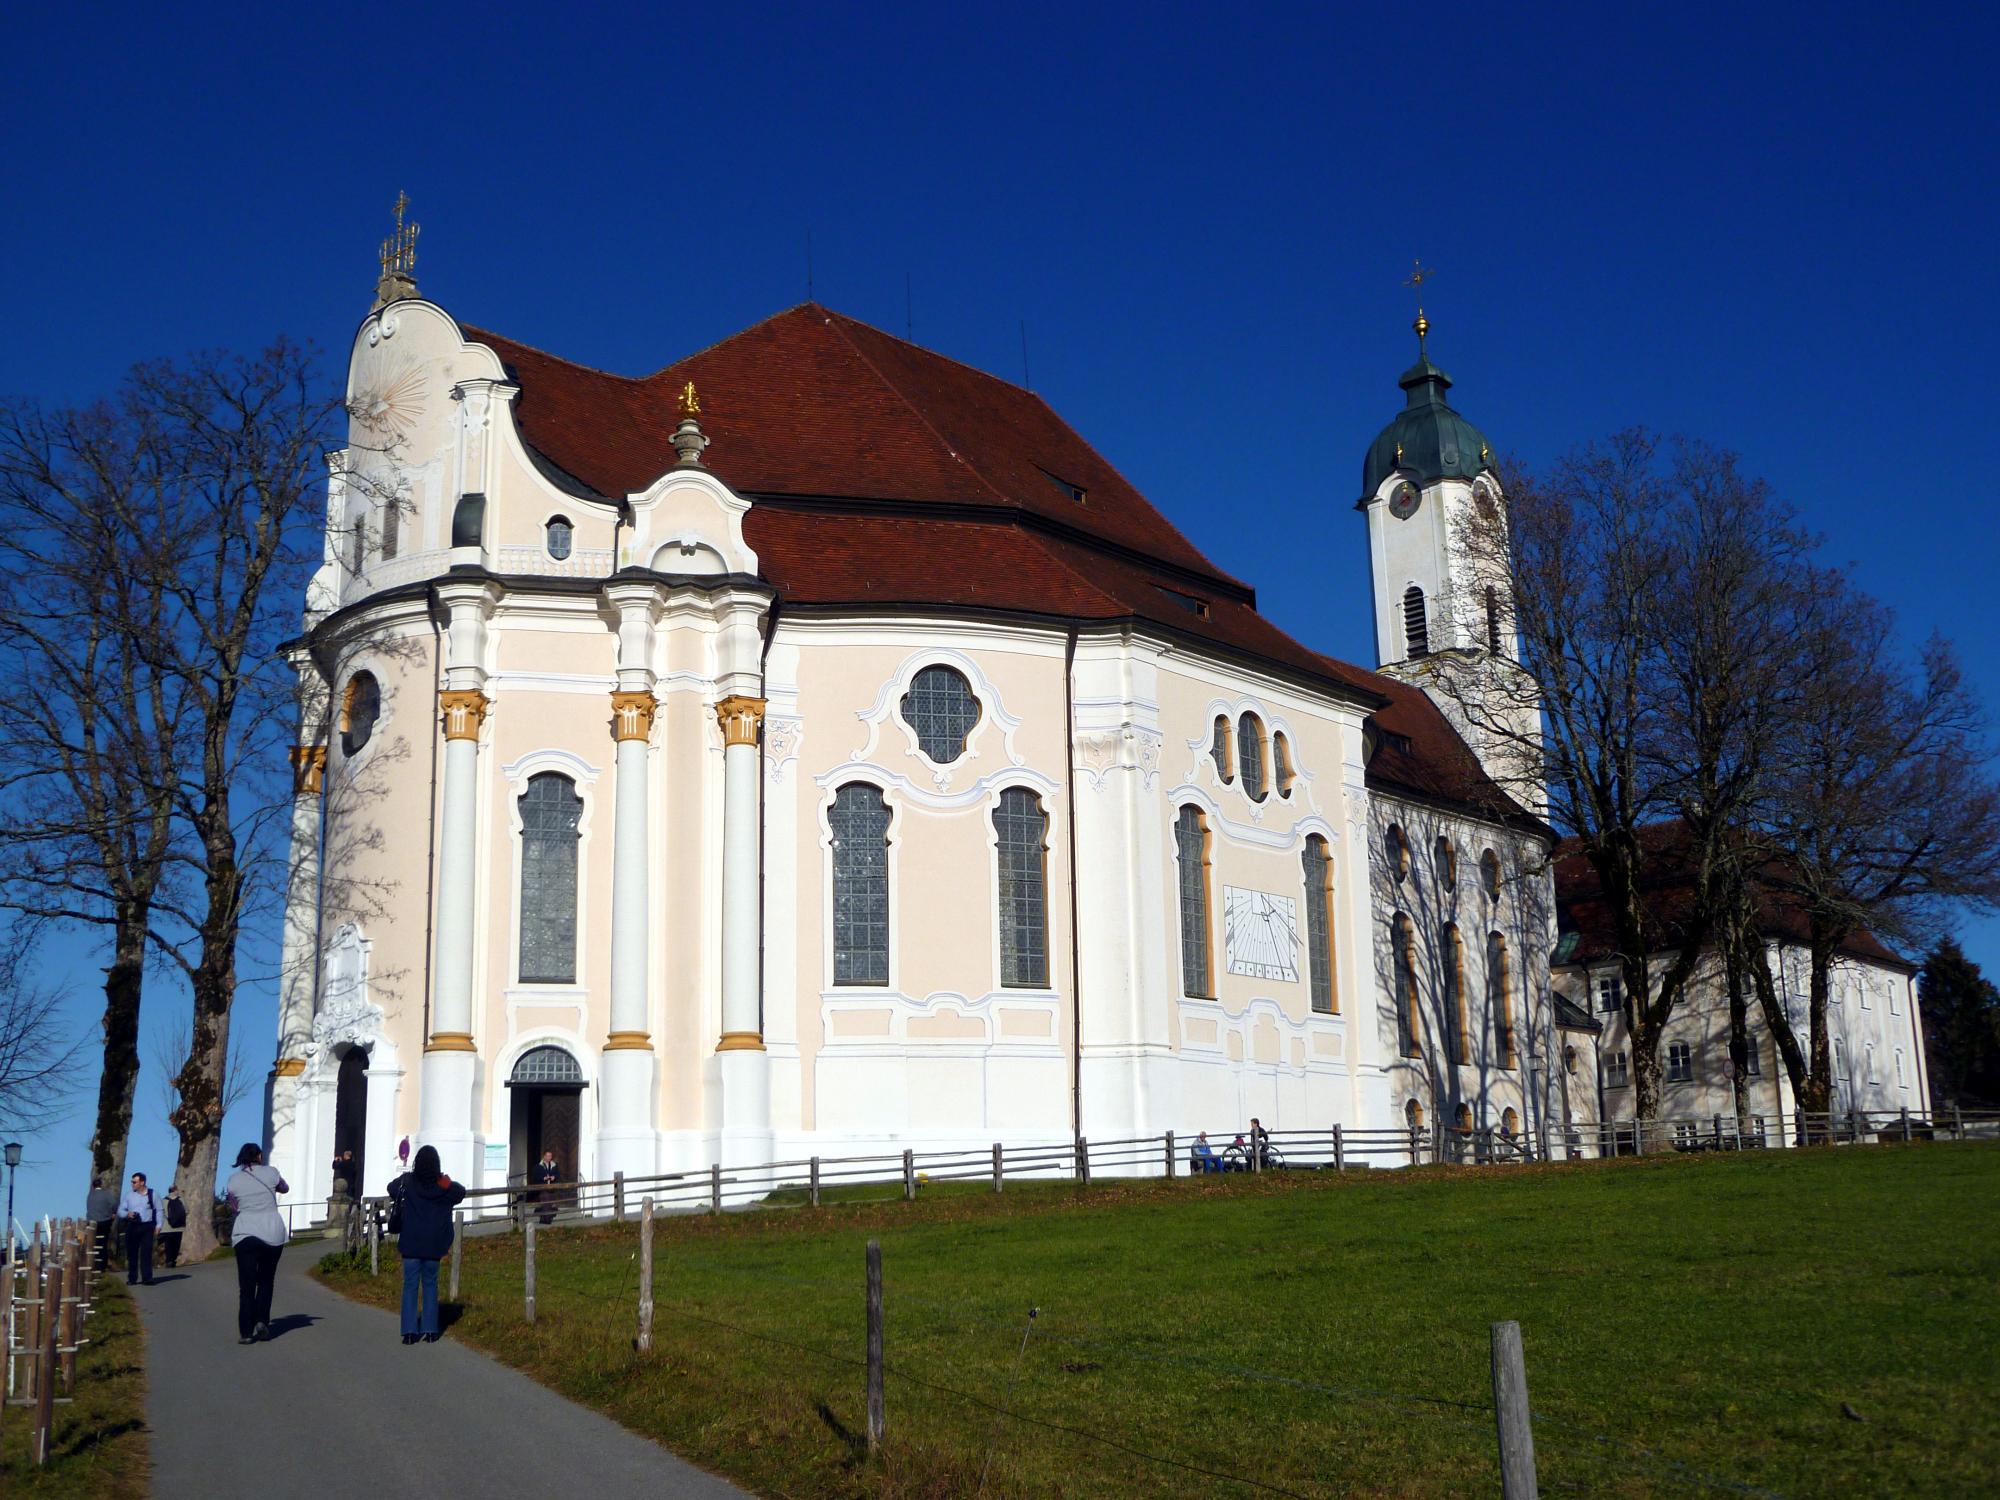 Germany - Wieskirche #1